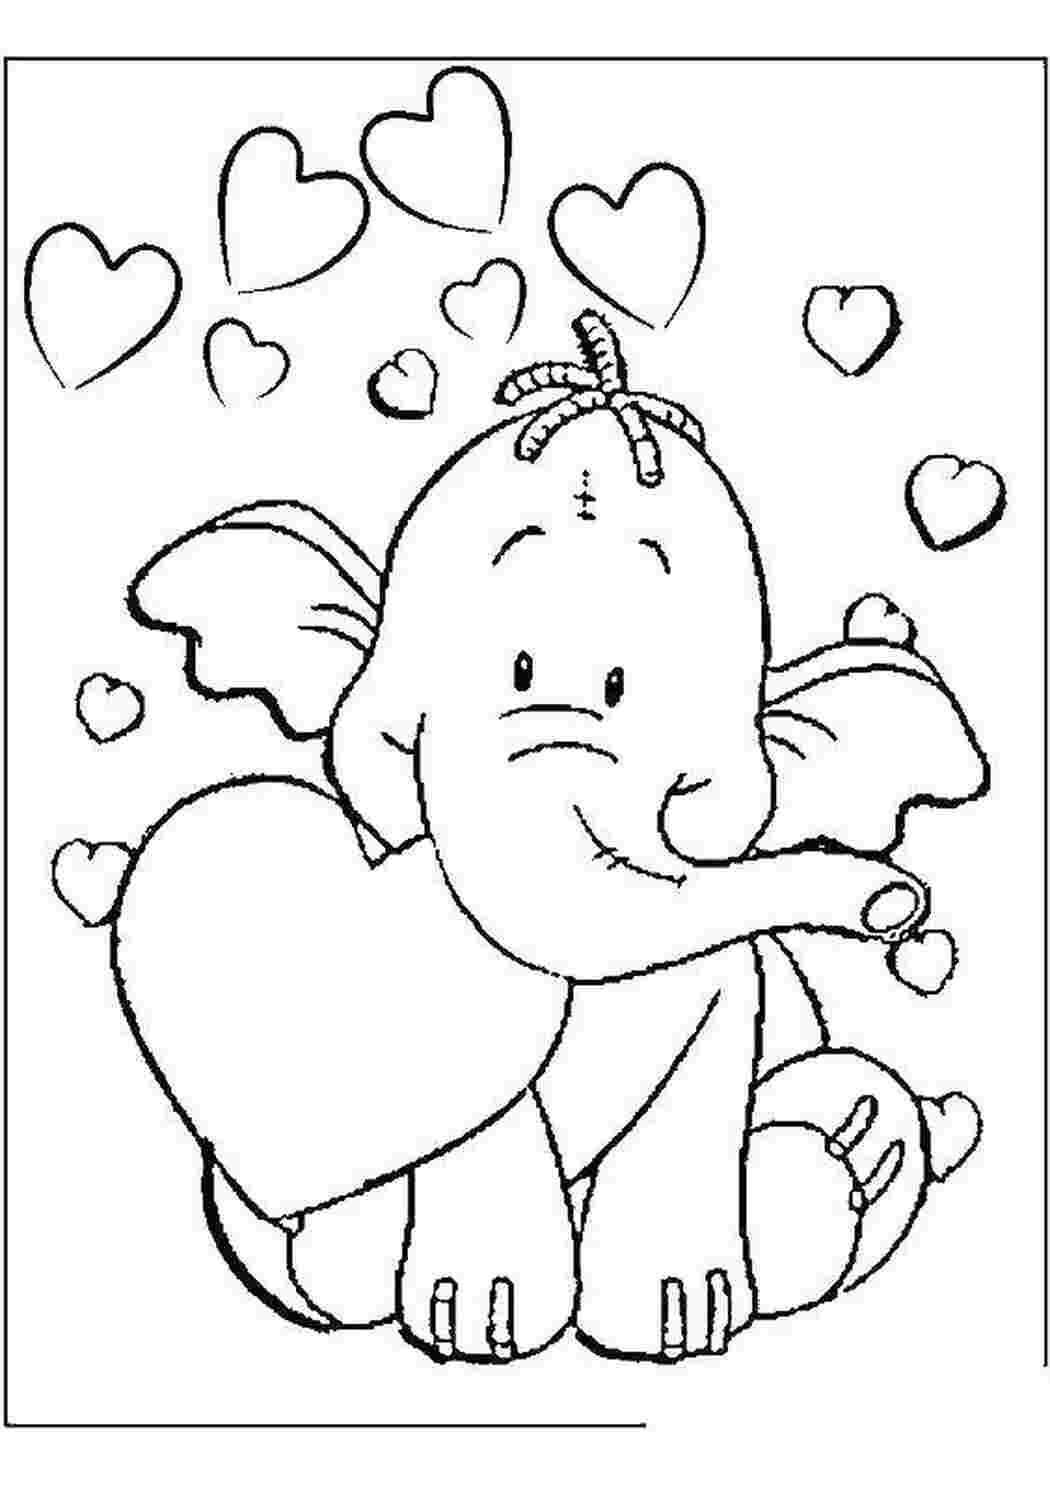 Раскраски Слоник с сердечком День святого валентина слон, сердце